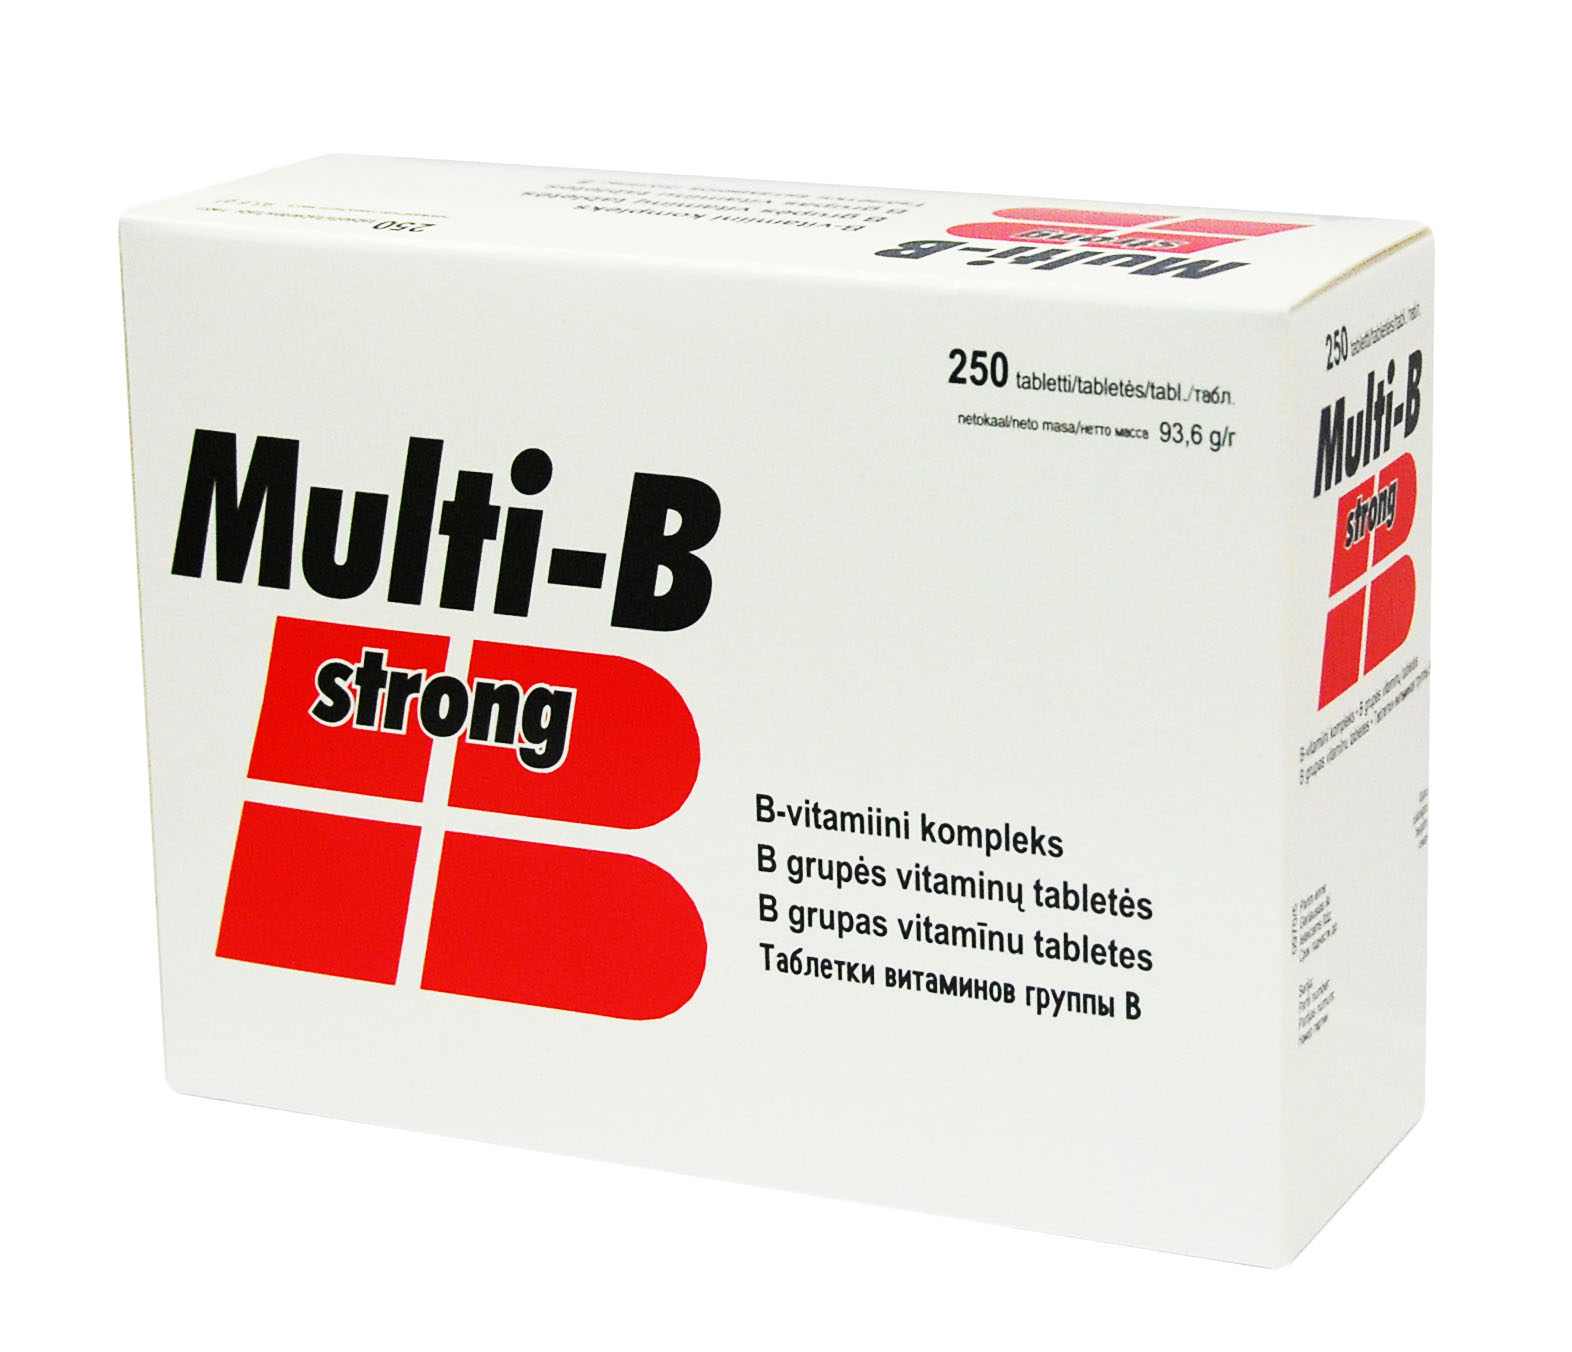 Силен лекарство цена. Strong таблетки. Multi-b strong. Мульти в Стронг. Таблетки n/b.